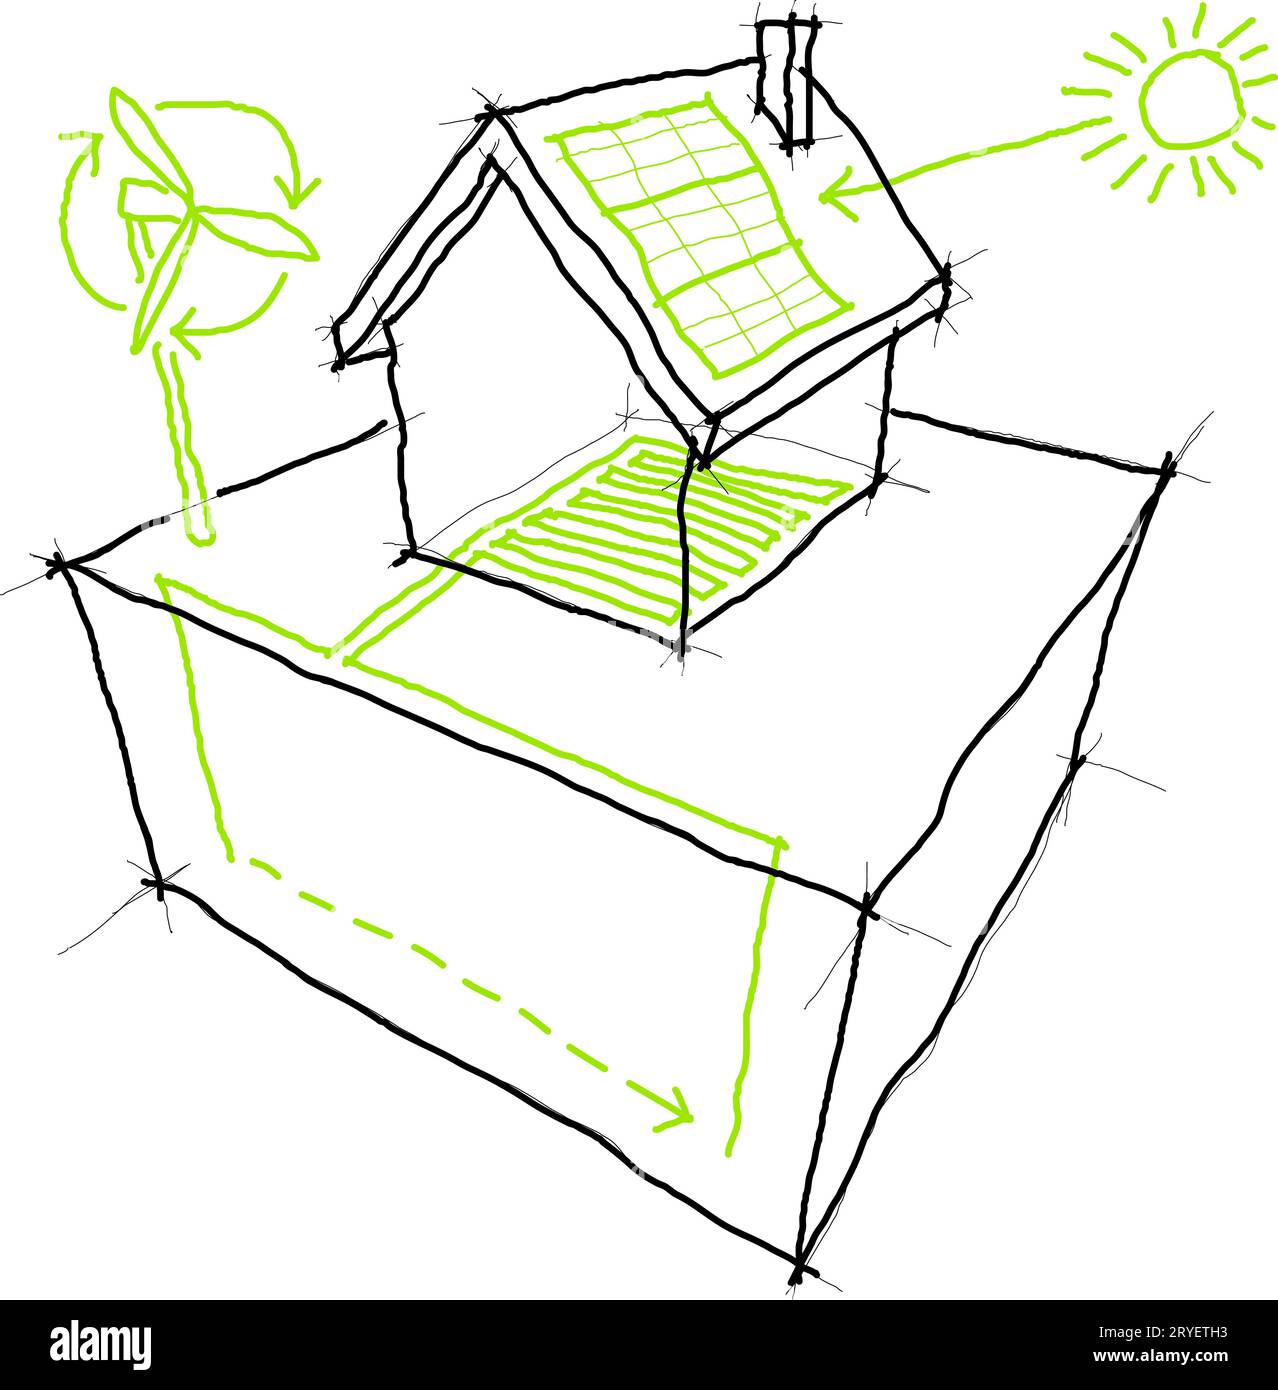 Renewable energy sketches Stock Photo